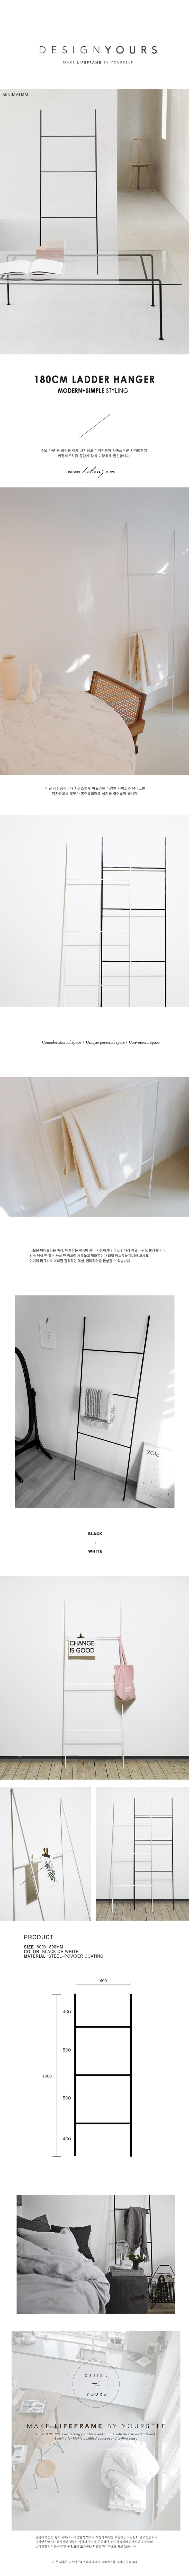 사다리행거 LADDER HANGER WHITE (M) - 디자인유얼스, 220,000원, 붙박이장/장롱, 행거형 옷장